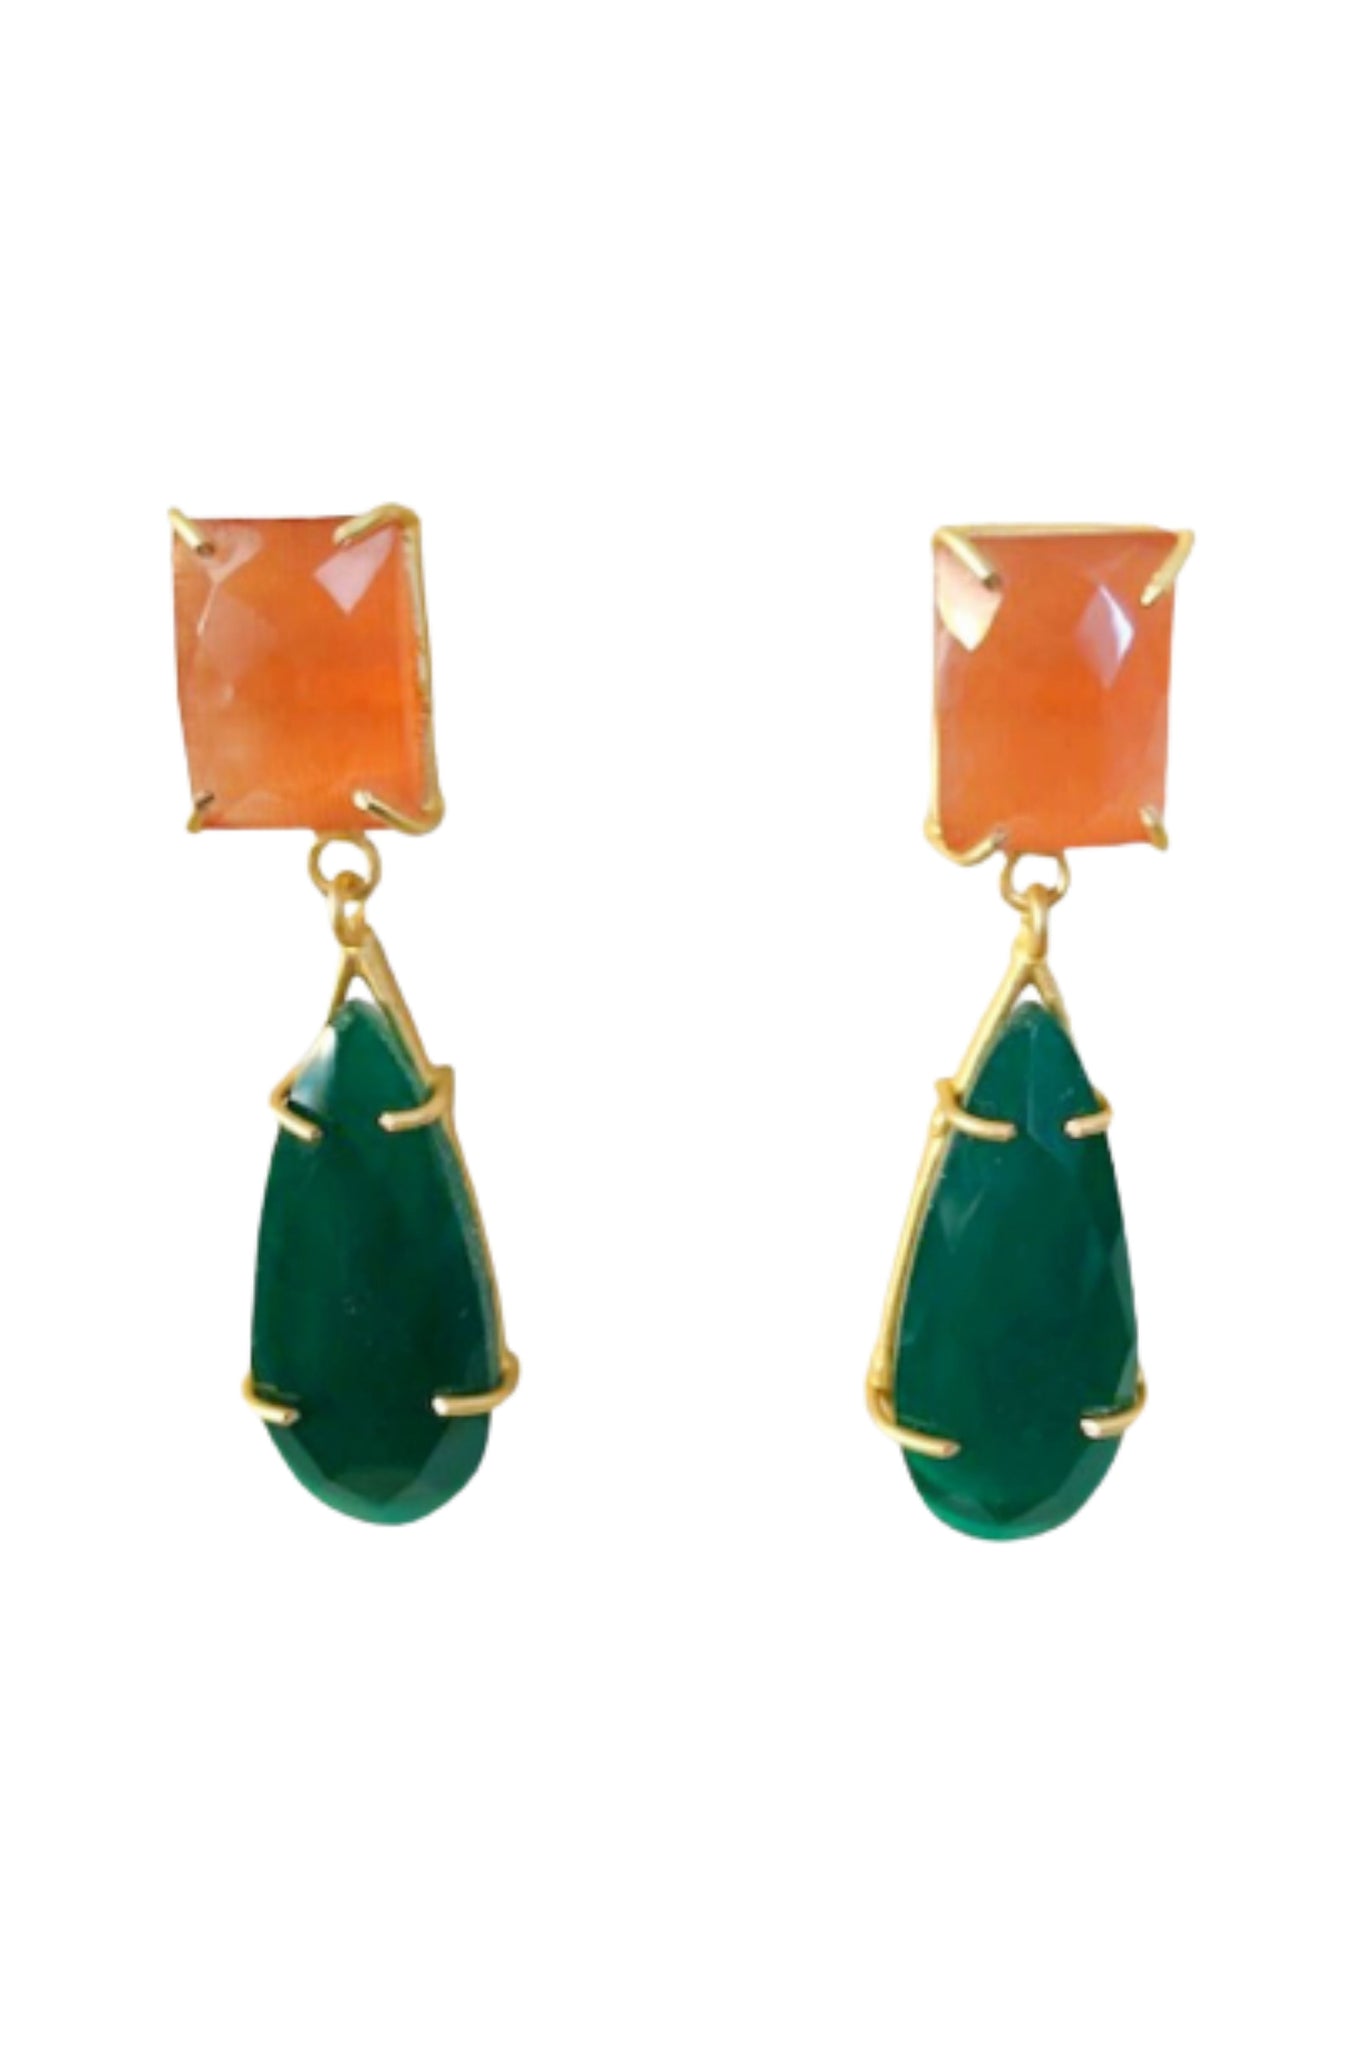 Charlotte Earring - Orange and Emerald